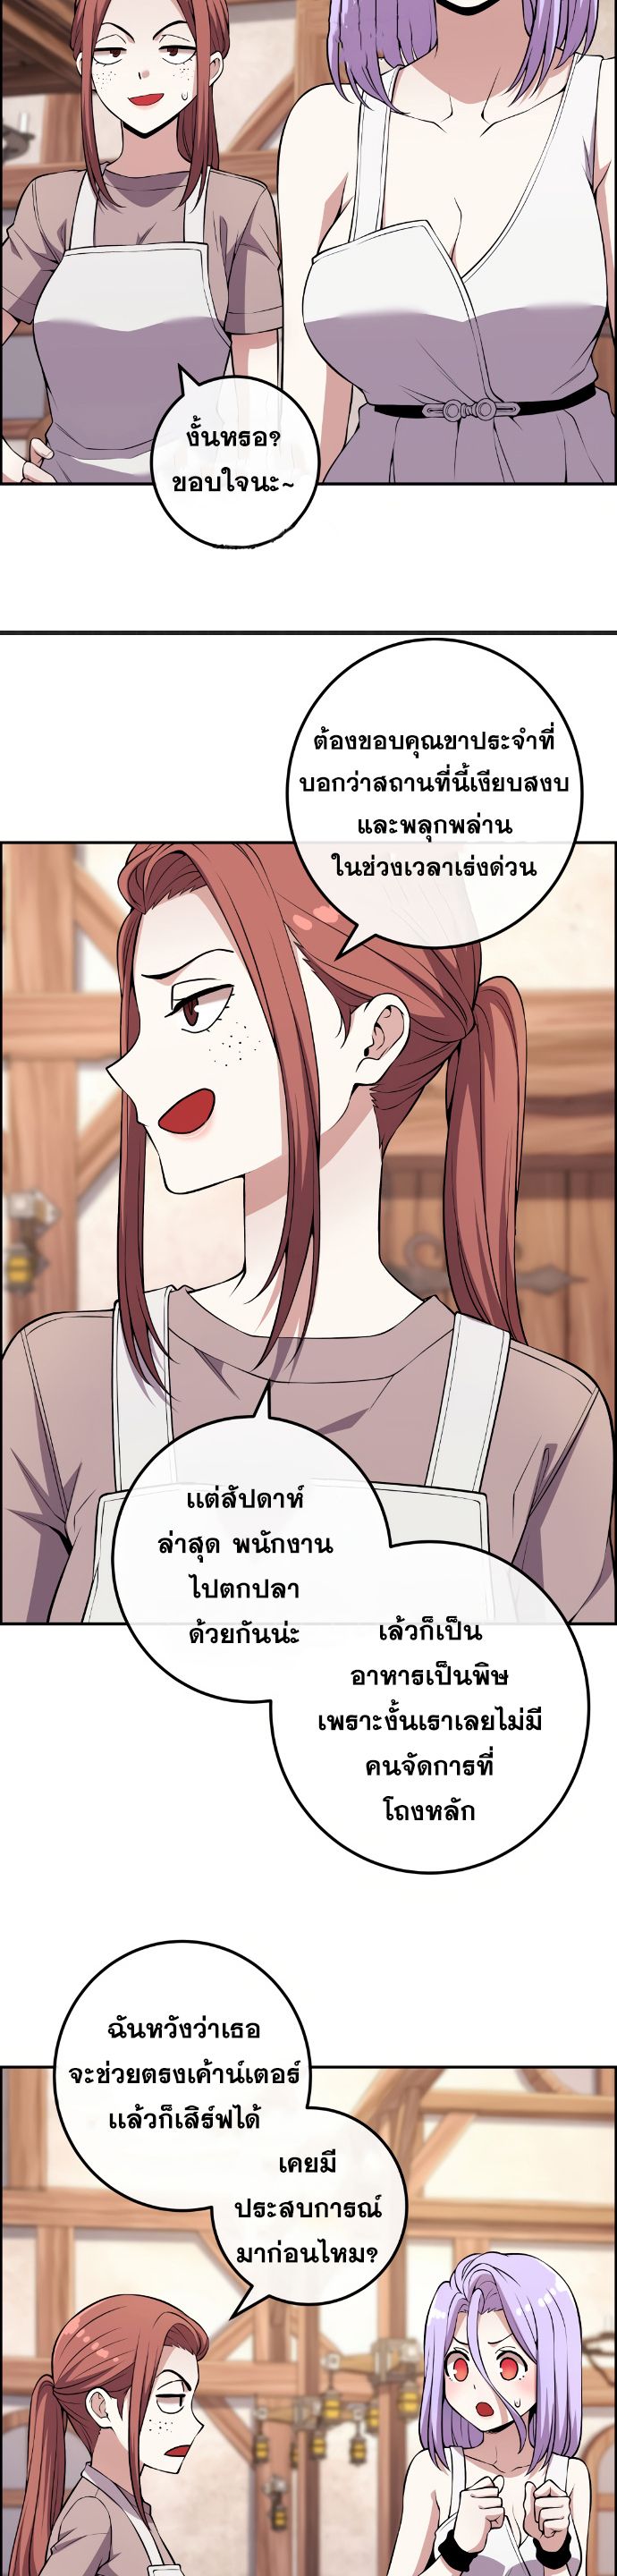 Webtoon Character Na Kang Lim ตอนที่ 124 (17)